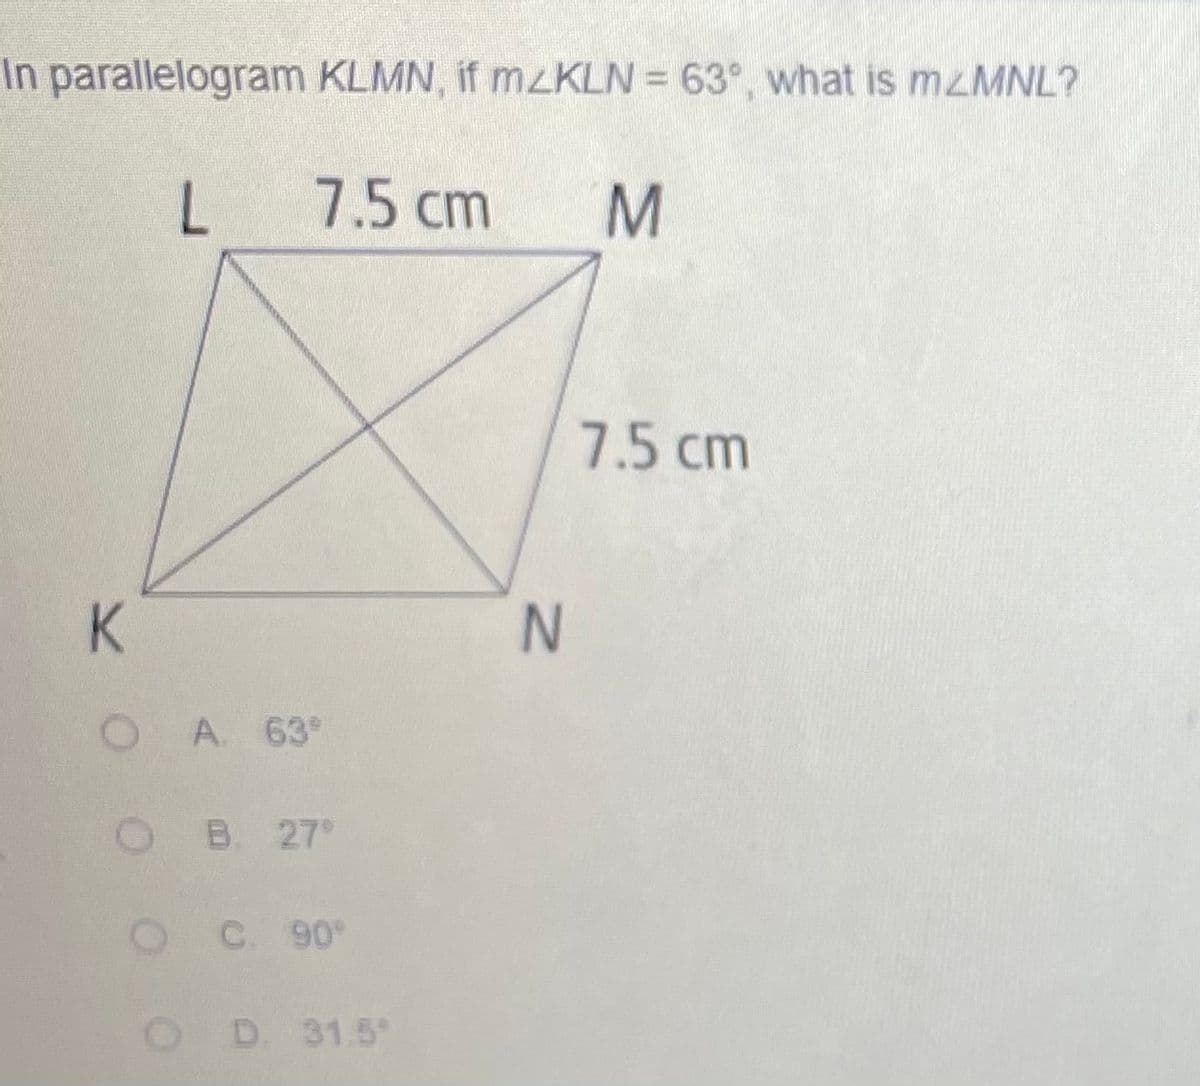 In parallelogram KLMN, if MZKLN = 63°, what is M2MNL?
L
7.5 cm
M.
7.5 cm
K.
A. 63°
B. 27
C. 90
D. 31.5
IN
